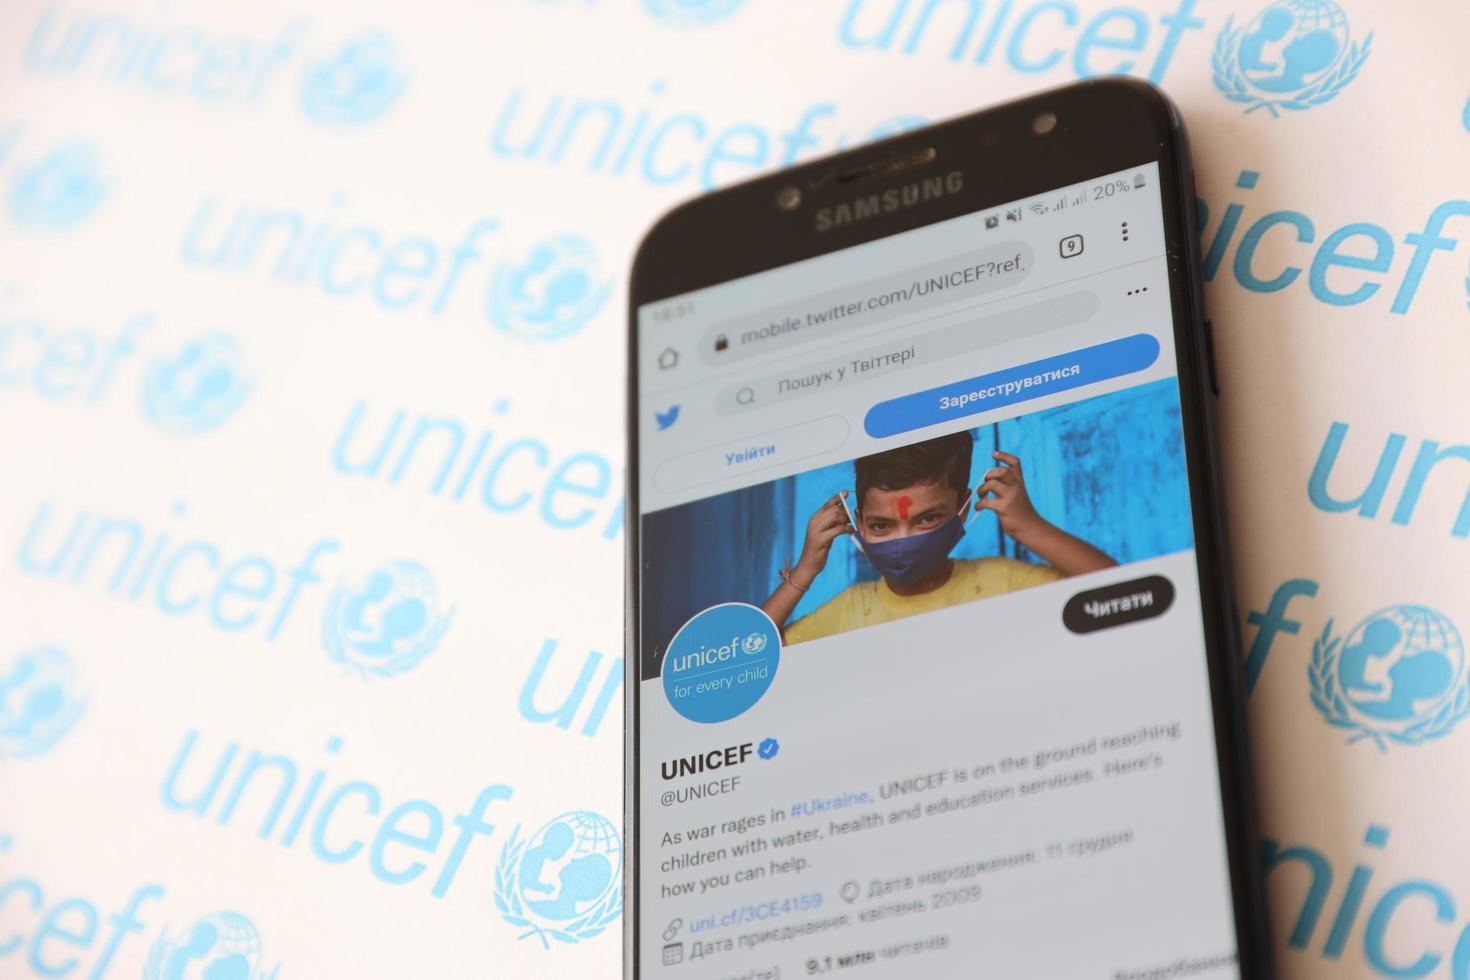 ternopil, Oekraïne - mei 2, 2022 unicef twitter account Aan smartphone scherm - Verenigde landen programm dat biedt humanitair en ontwikkelingsstoornissen bijstand naar kinderen foto